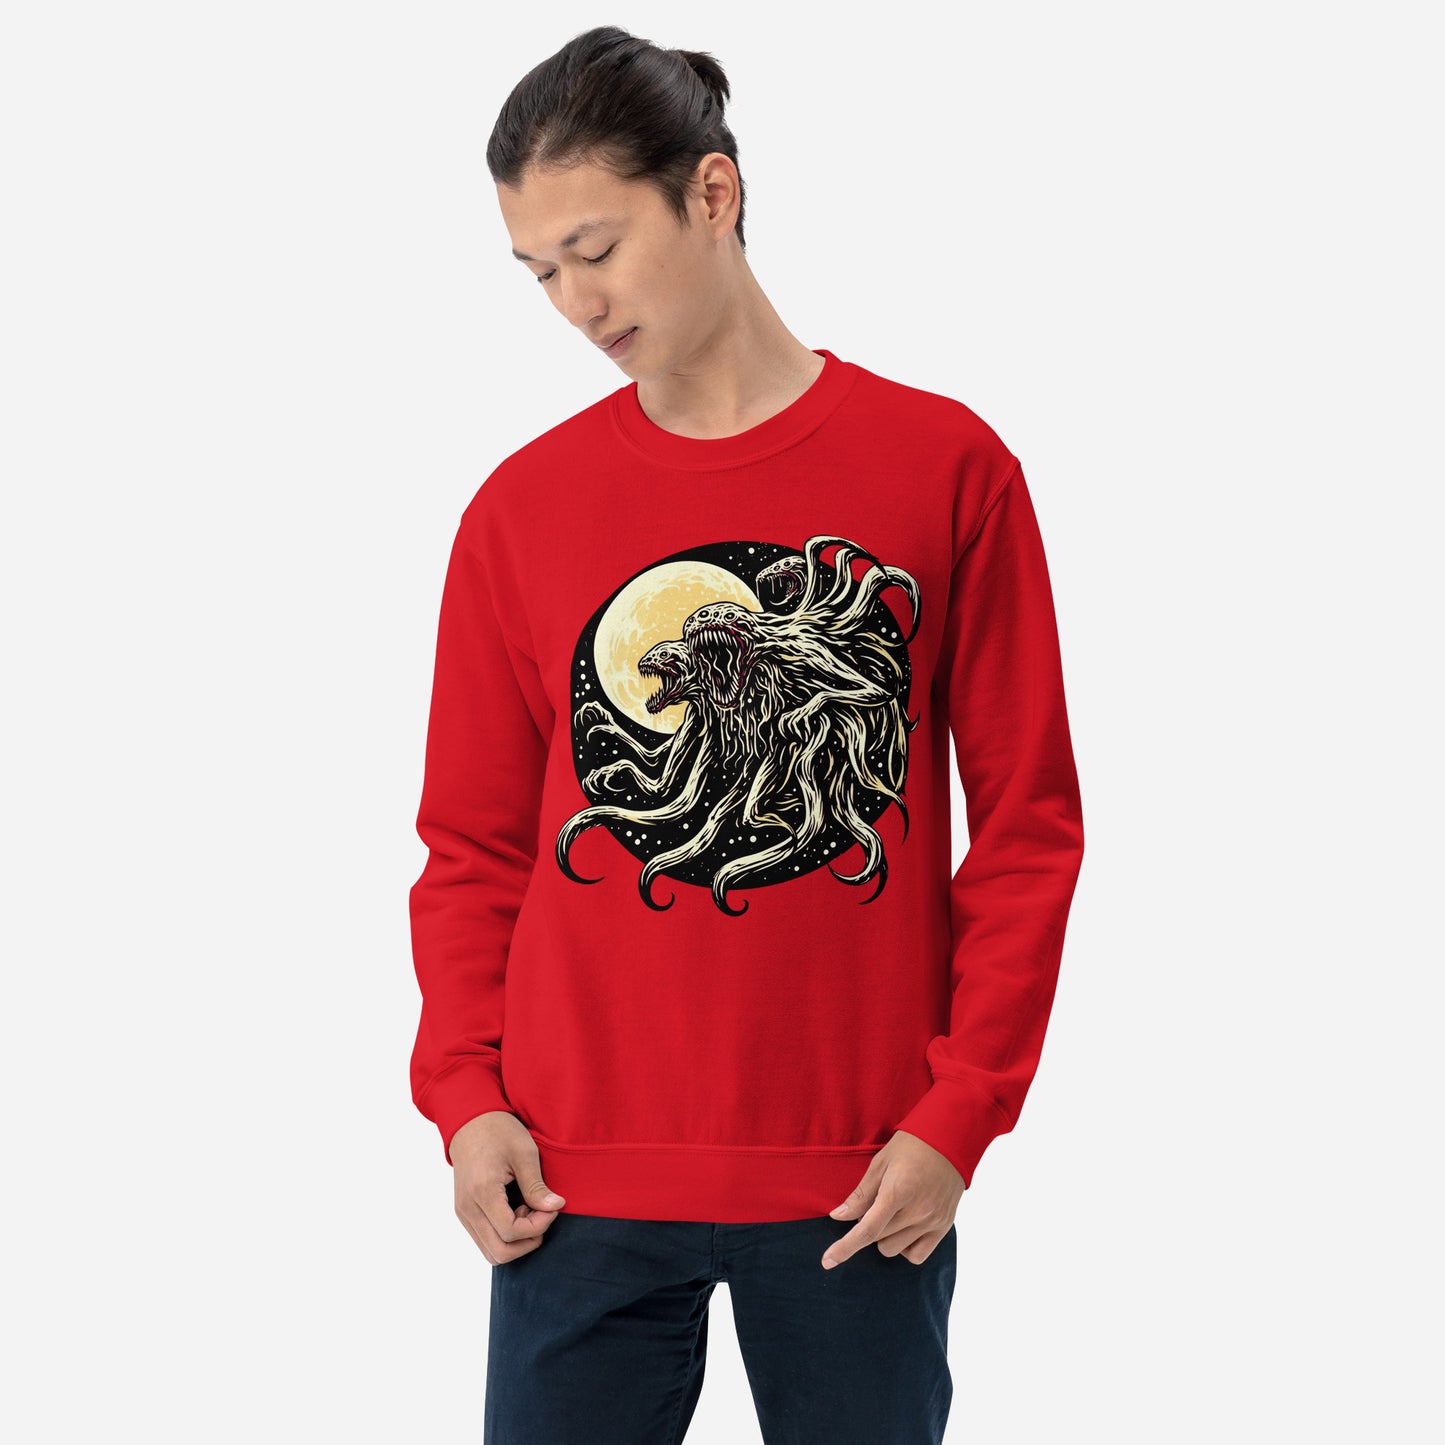 "starfiend" unisex sweatshirt